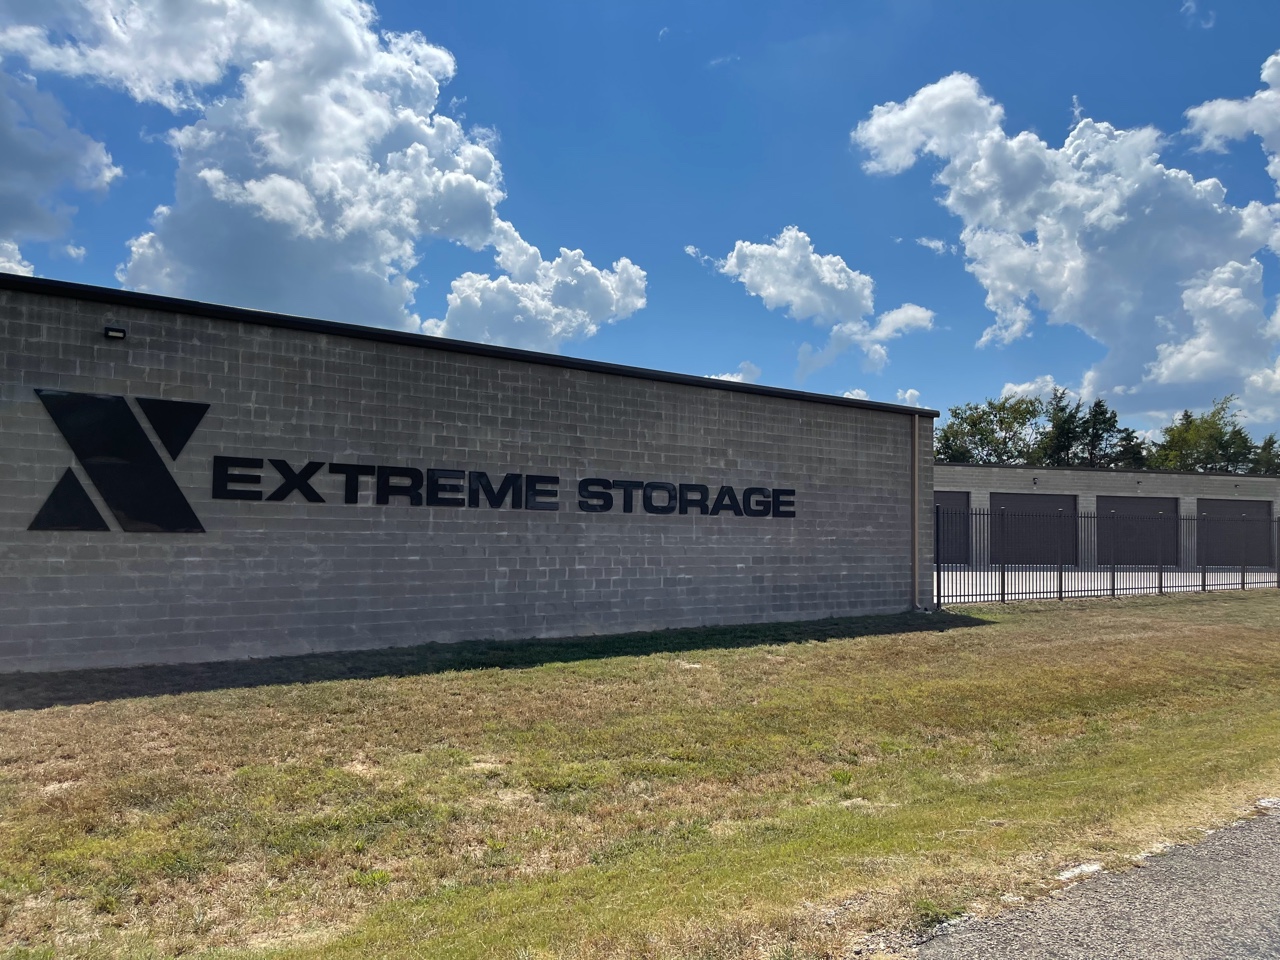 X Extreme Storage